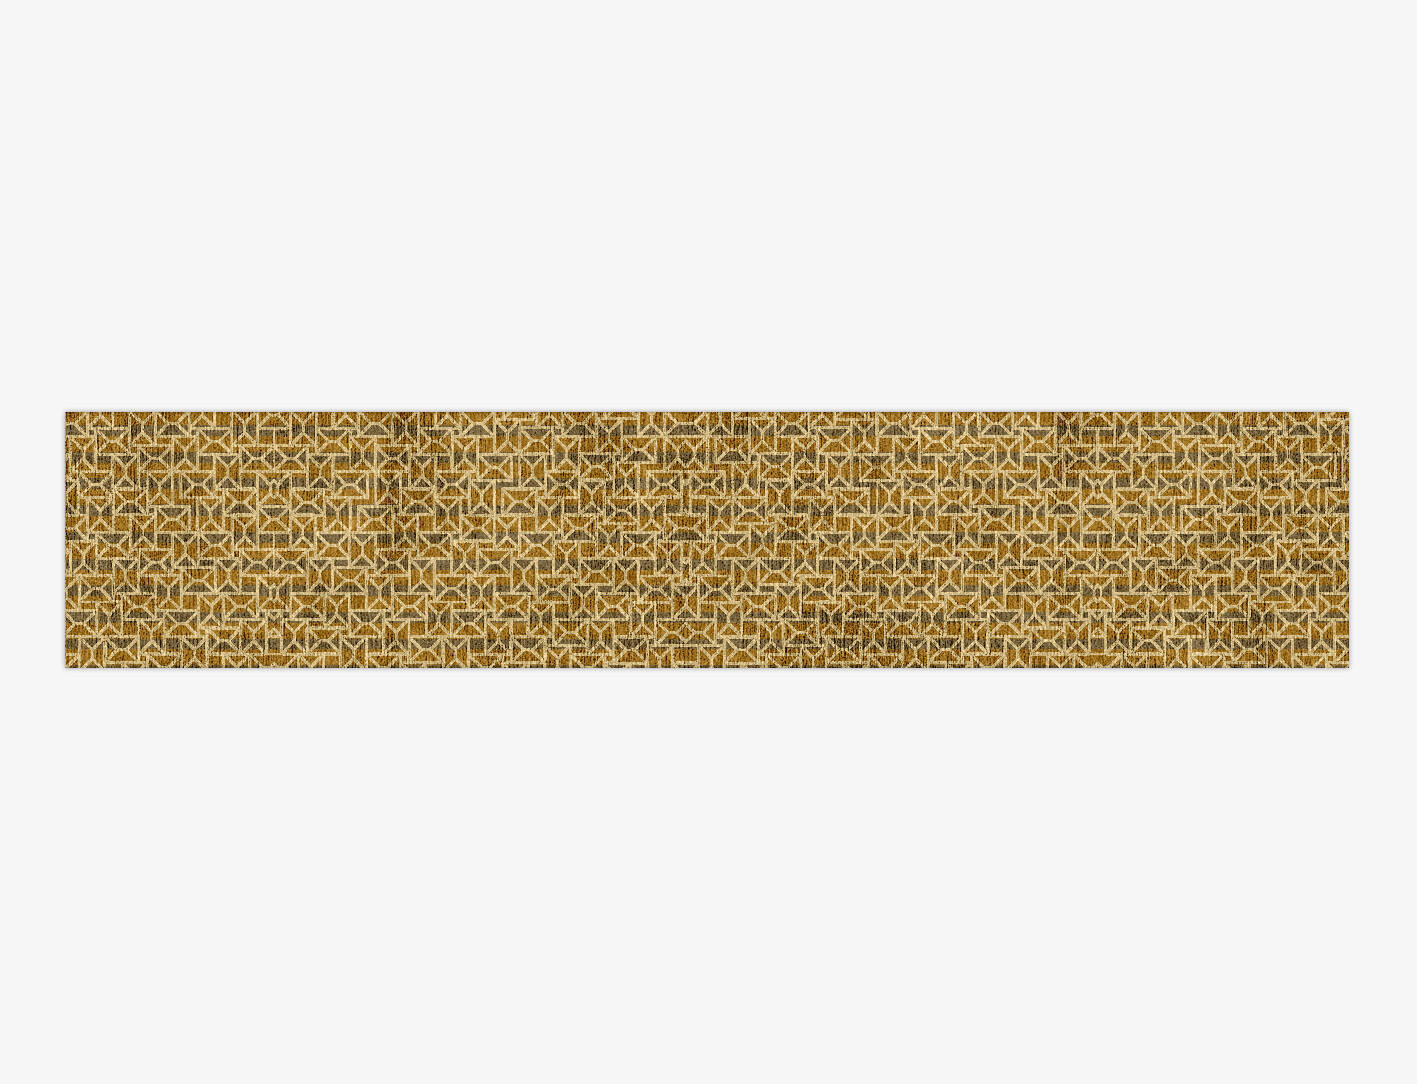 Envelope Modern Geometrics Runner Hand Knotted Bamboo Silk Custom Rug by Rug Artisan